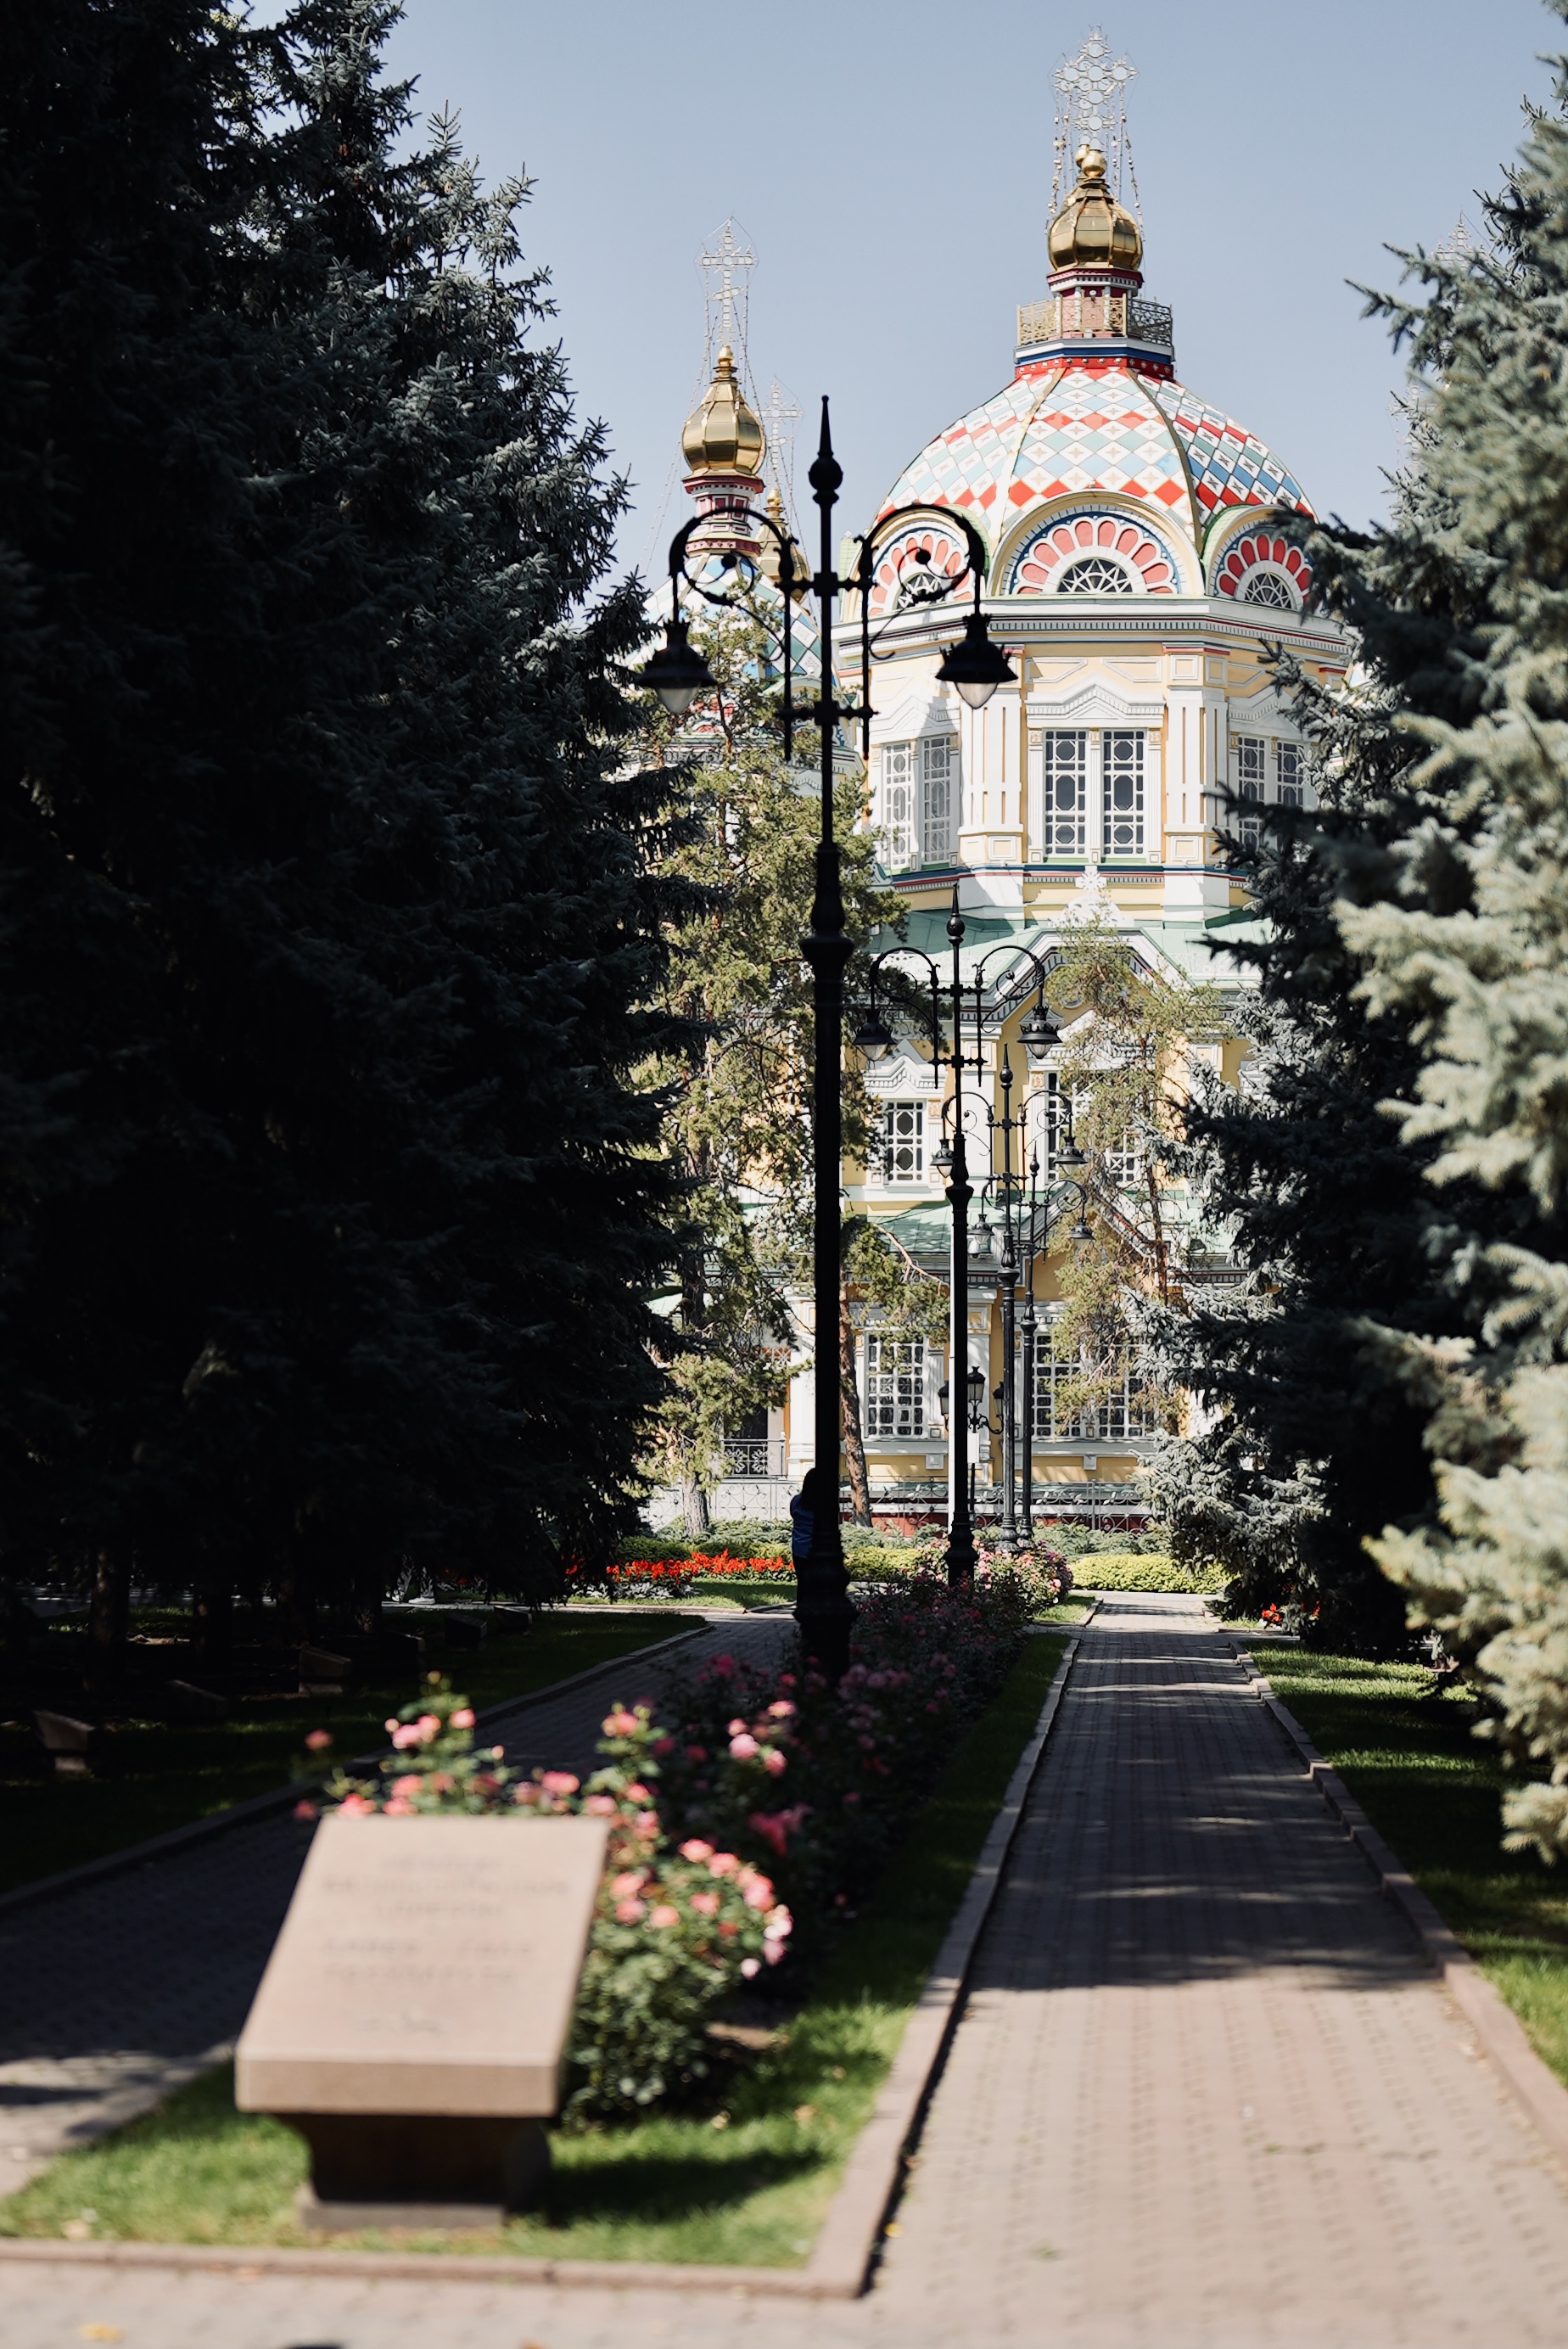 A glimpse of a street corner in Almaty, Kazakhstan. /CGTN